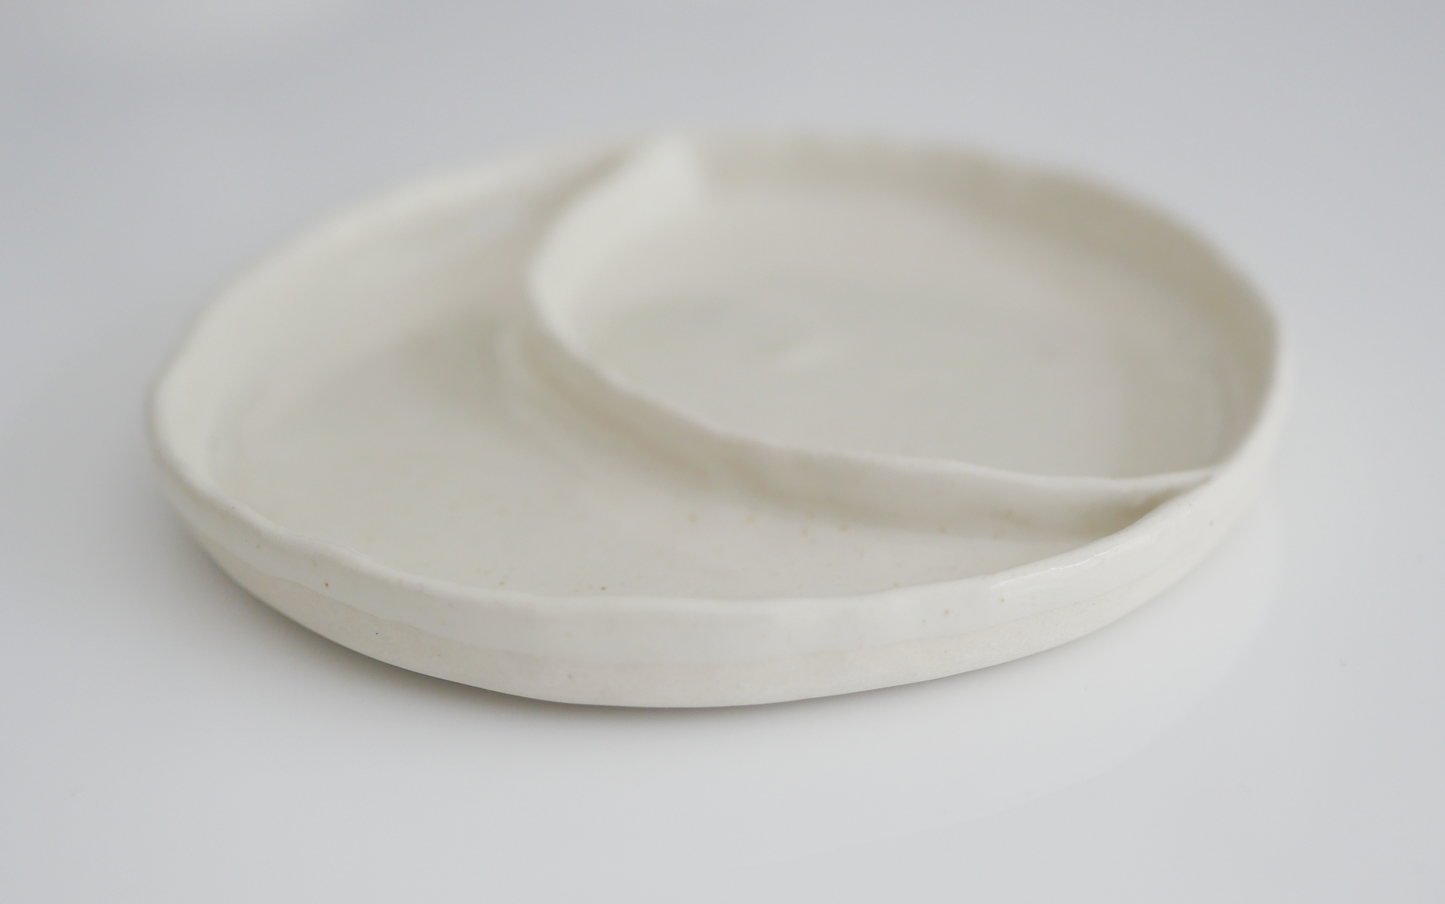 LUNA // ceramic dish